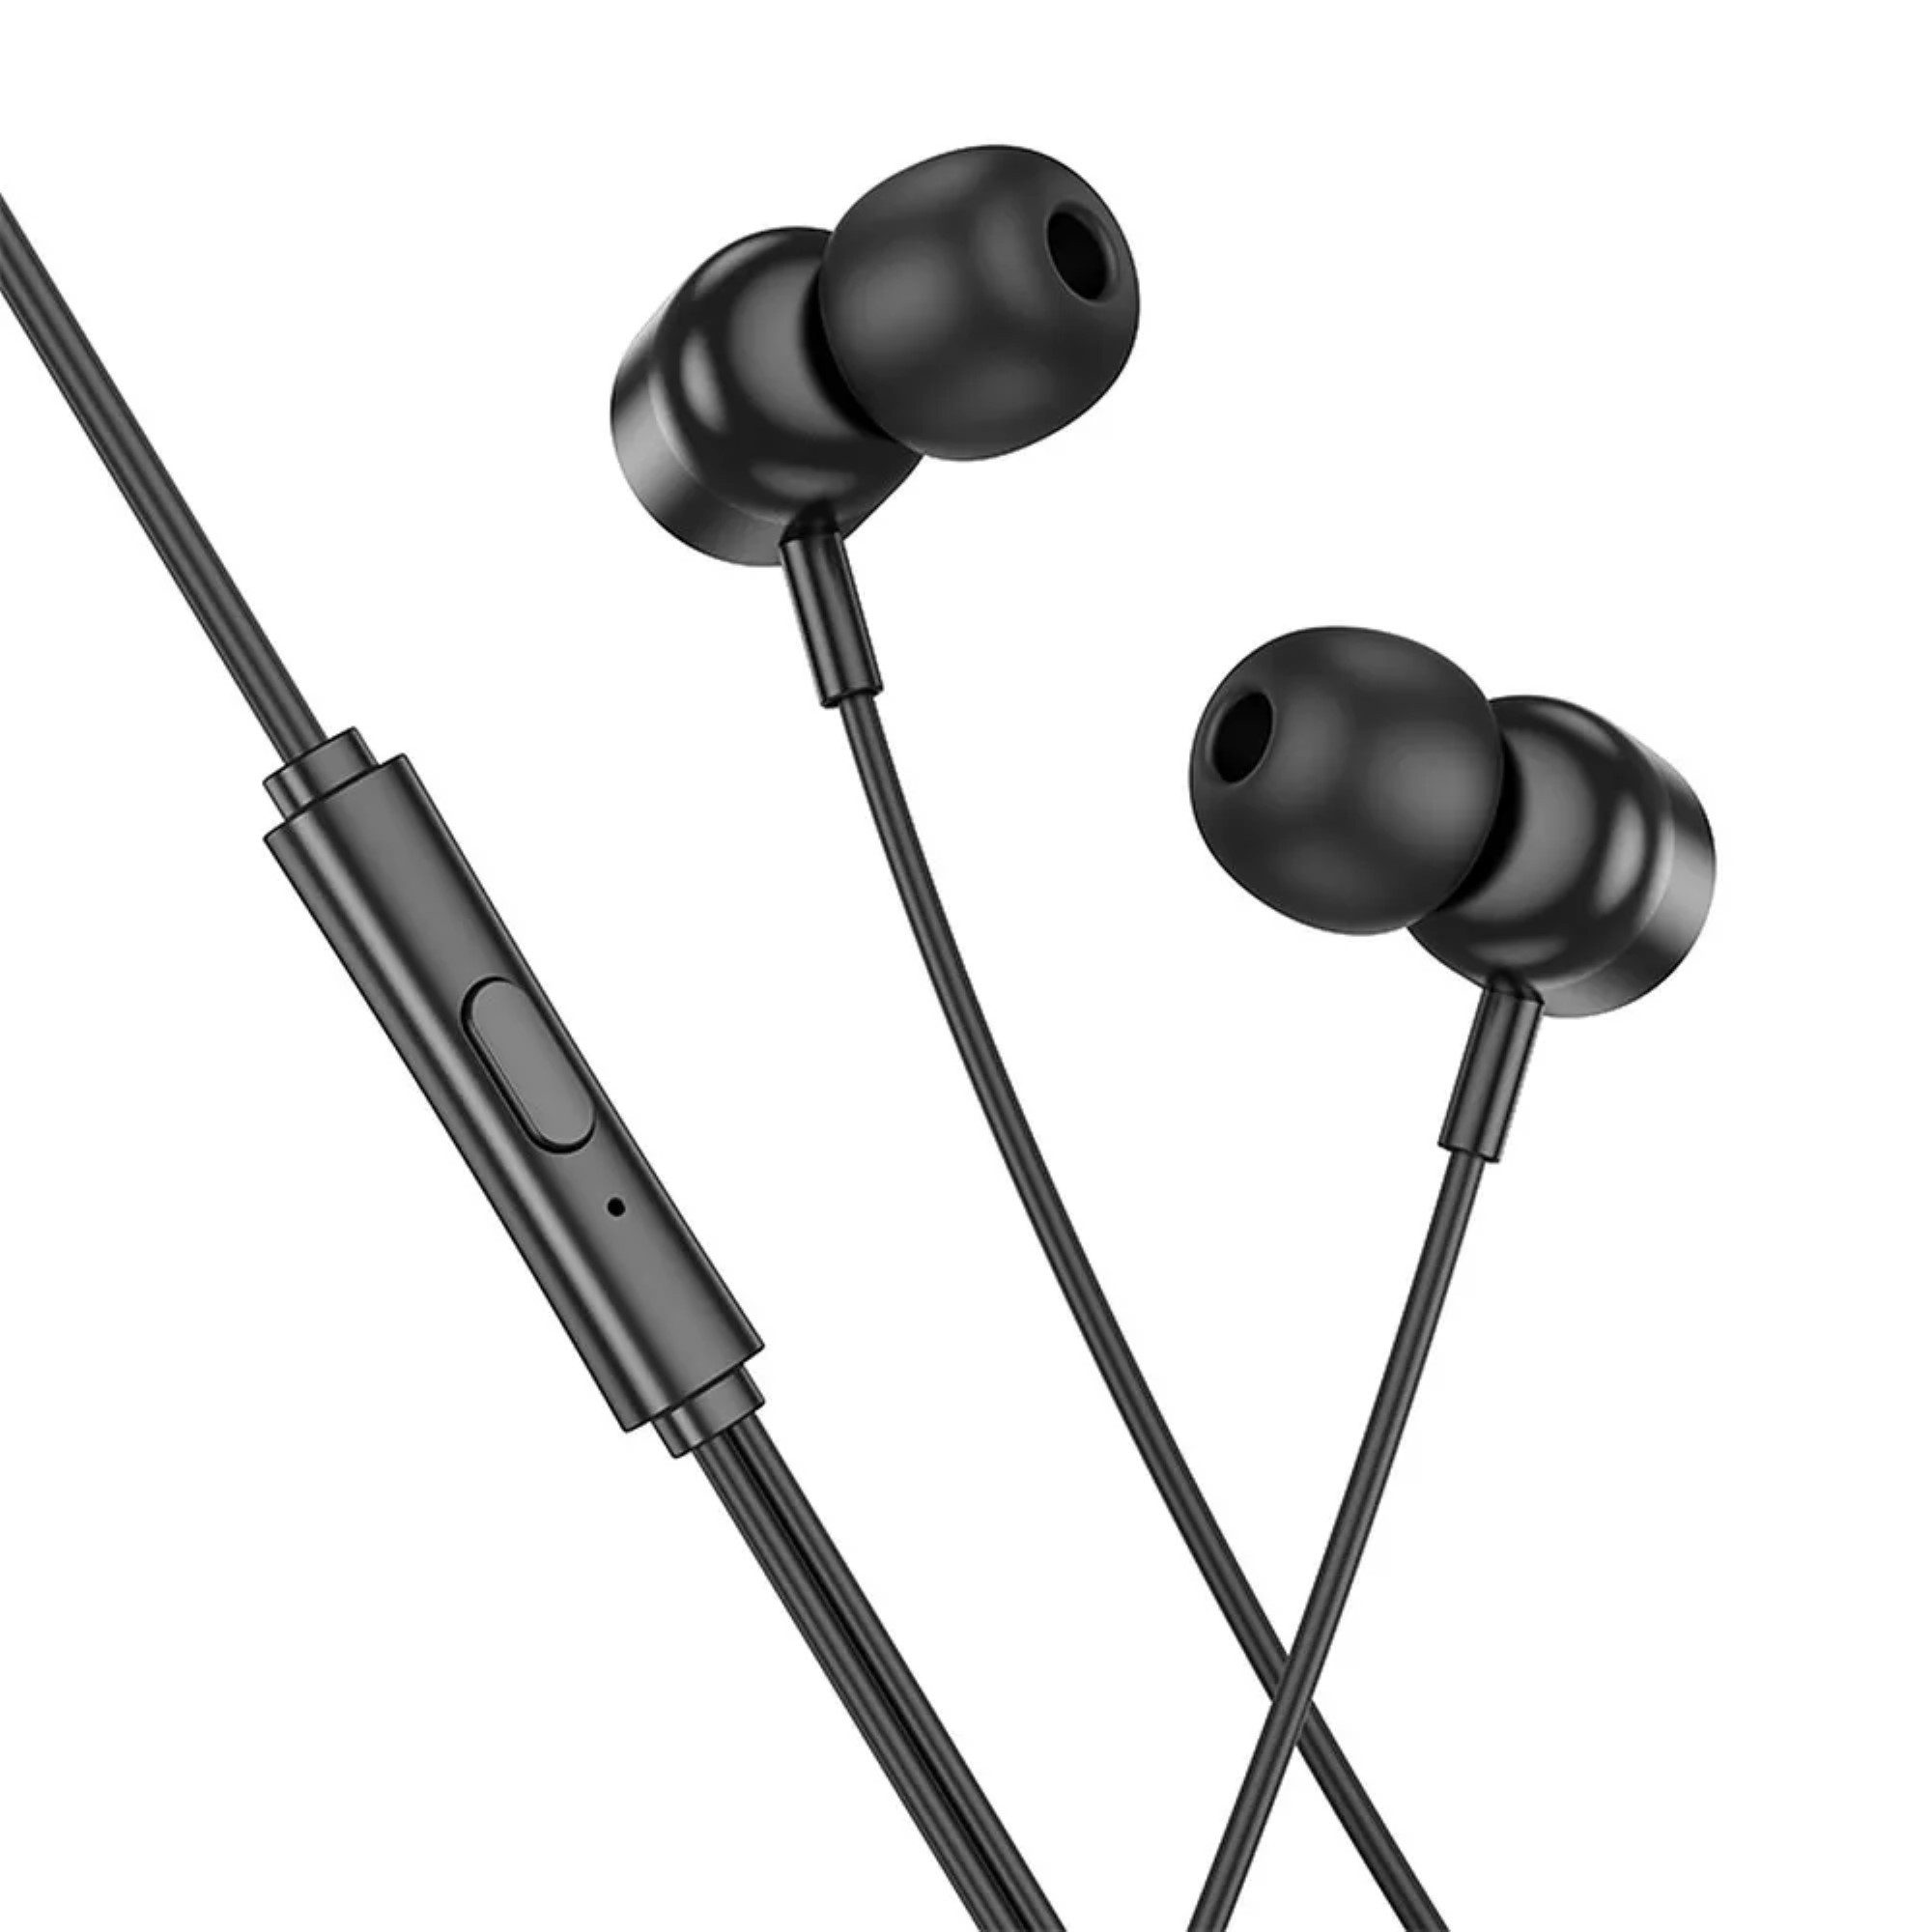 HOCO Headset / In-Ear-Kopfhörer USB Typ C mit M122 Power-Mikrofon 1,2m In-Ear-Kopfhörer